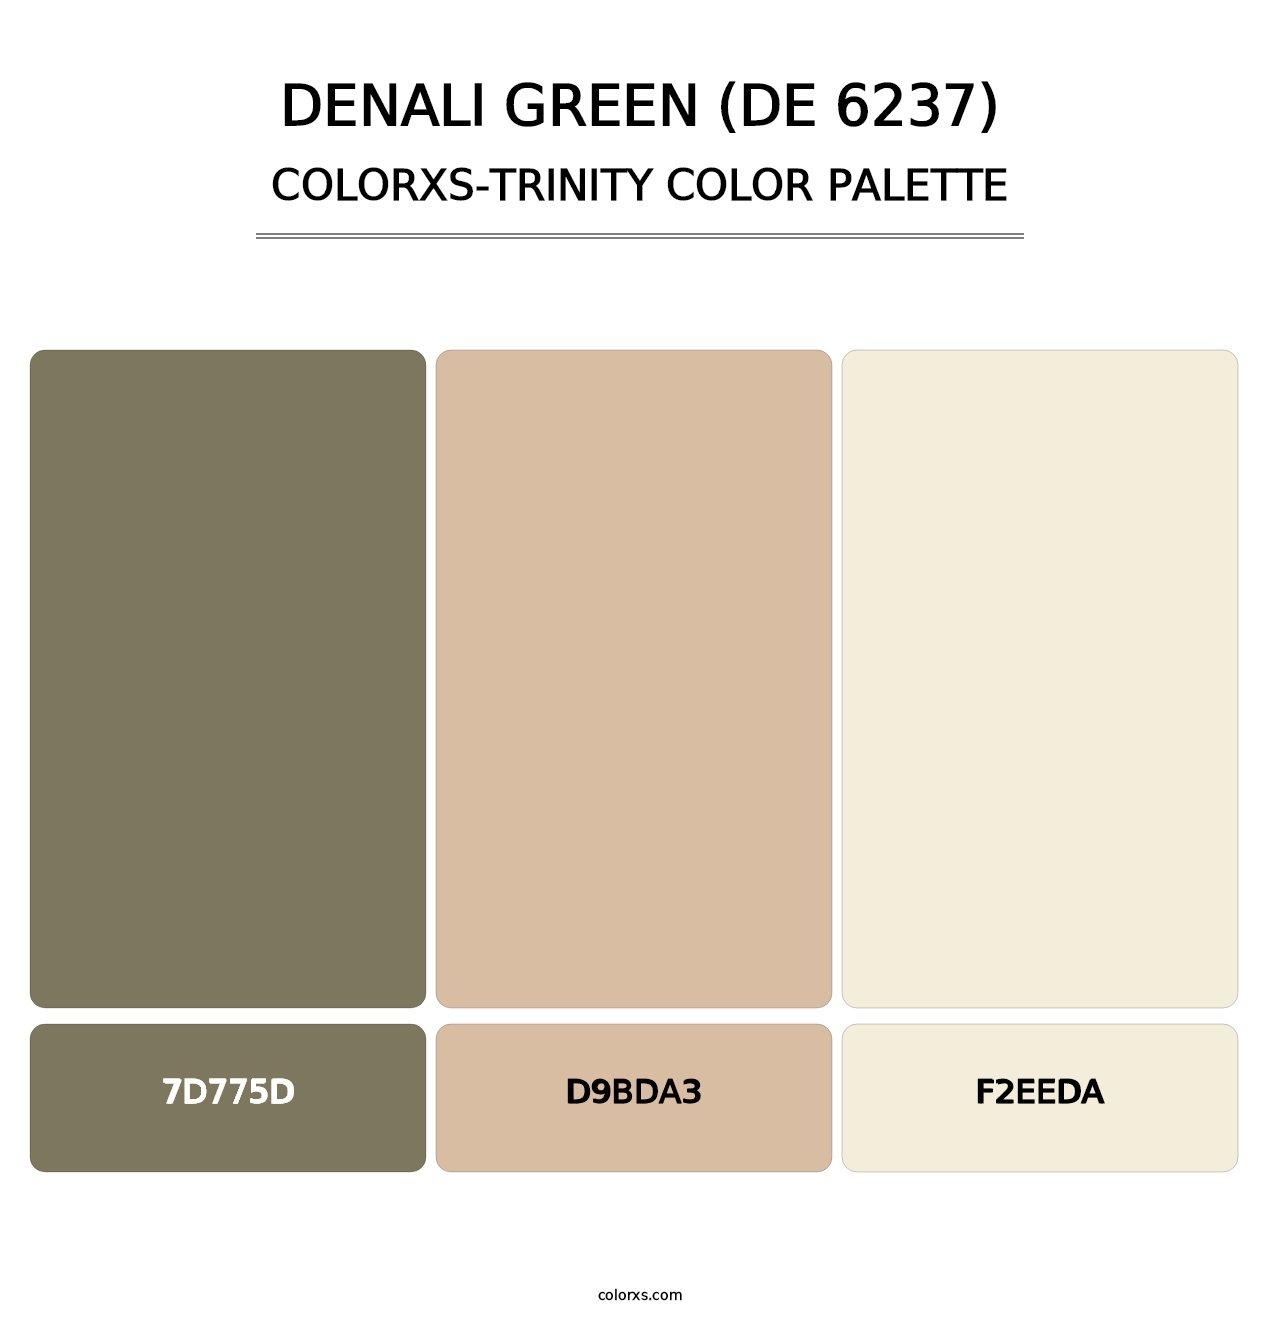 Denali Green (DE 6237) - Colorxs Trinity Palette